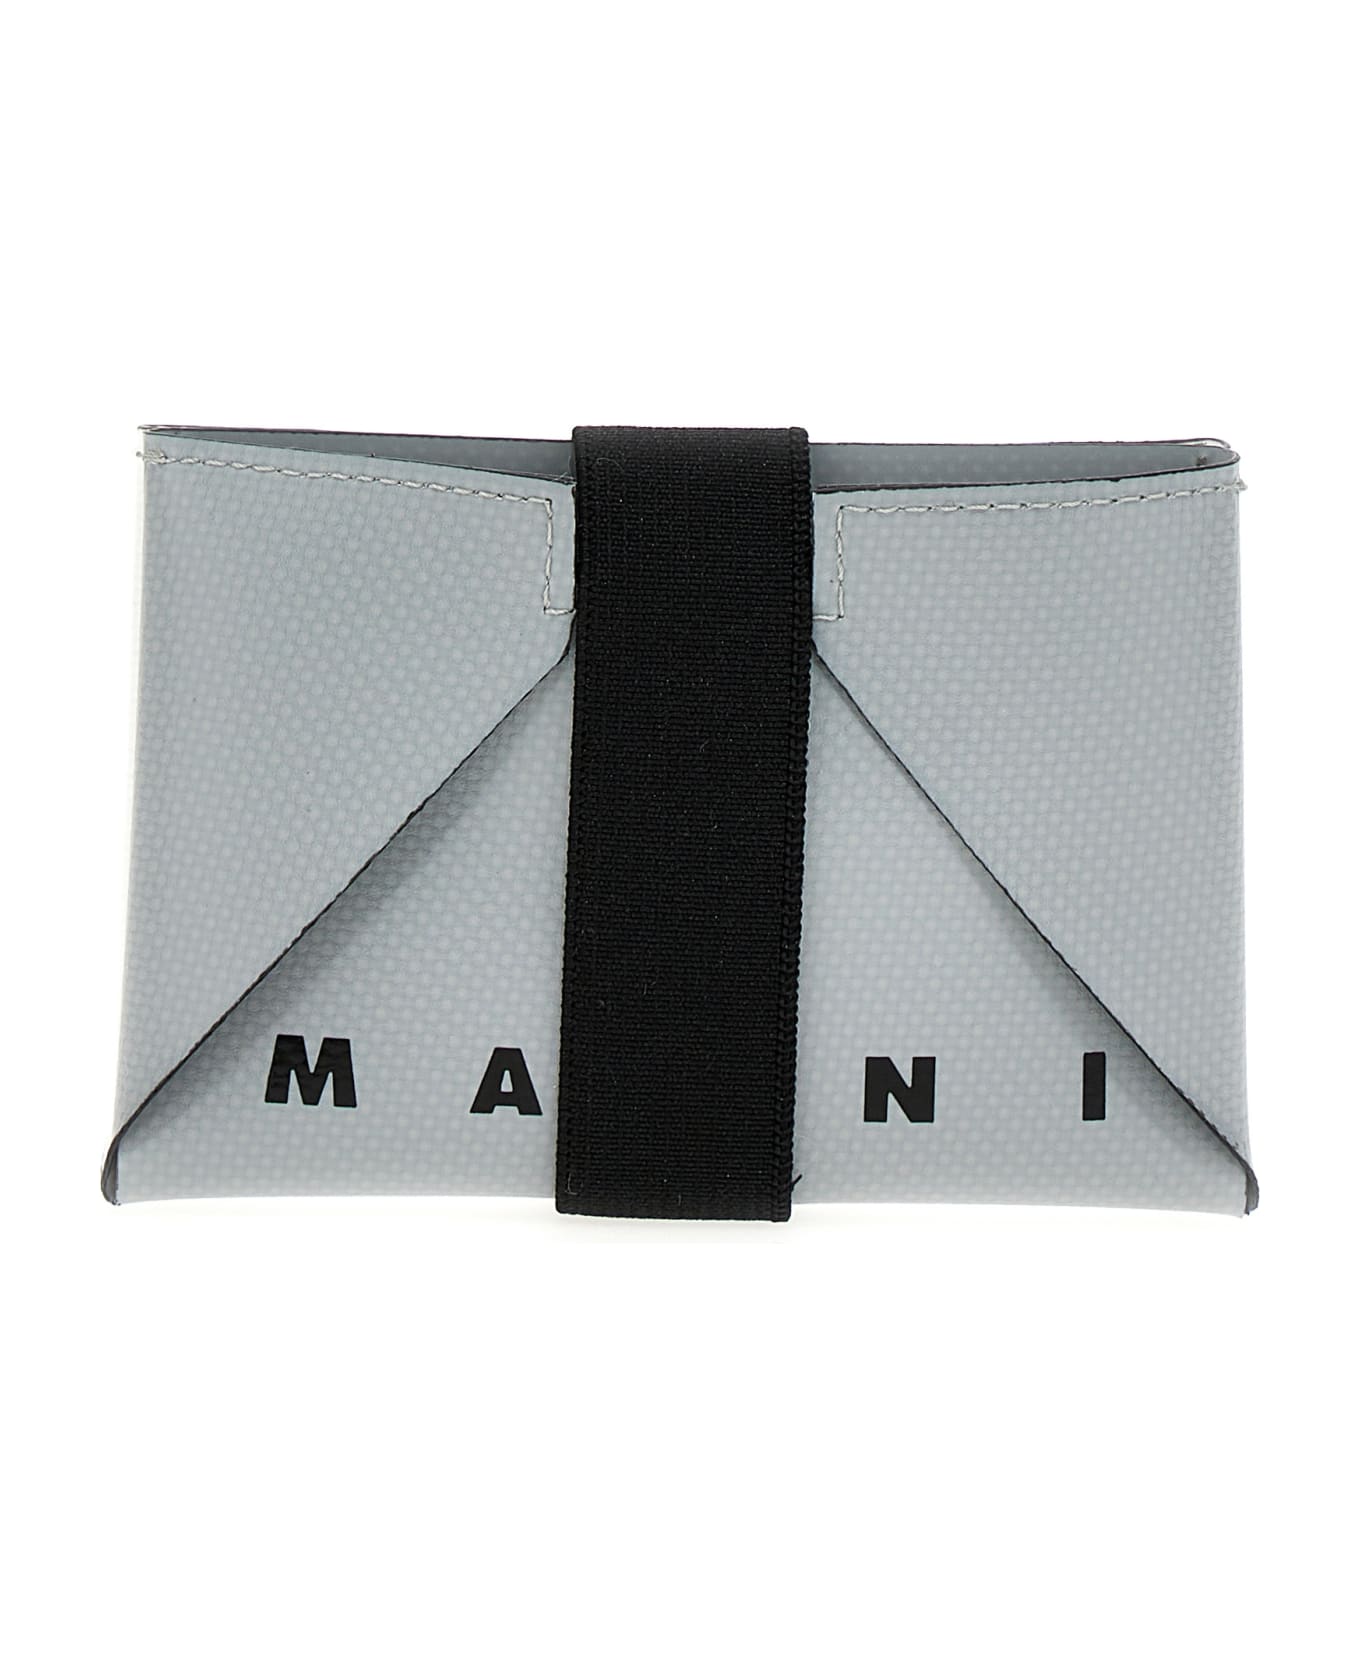 Marni Two-color Logo Wallet - Multicolor 財布